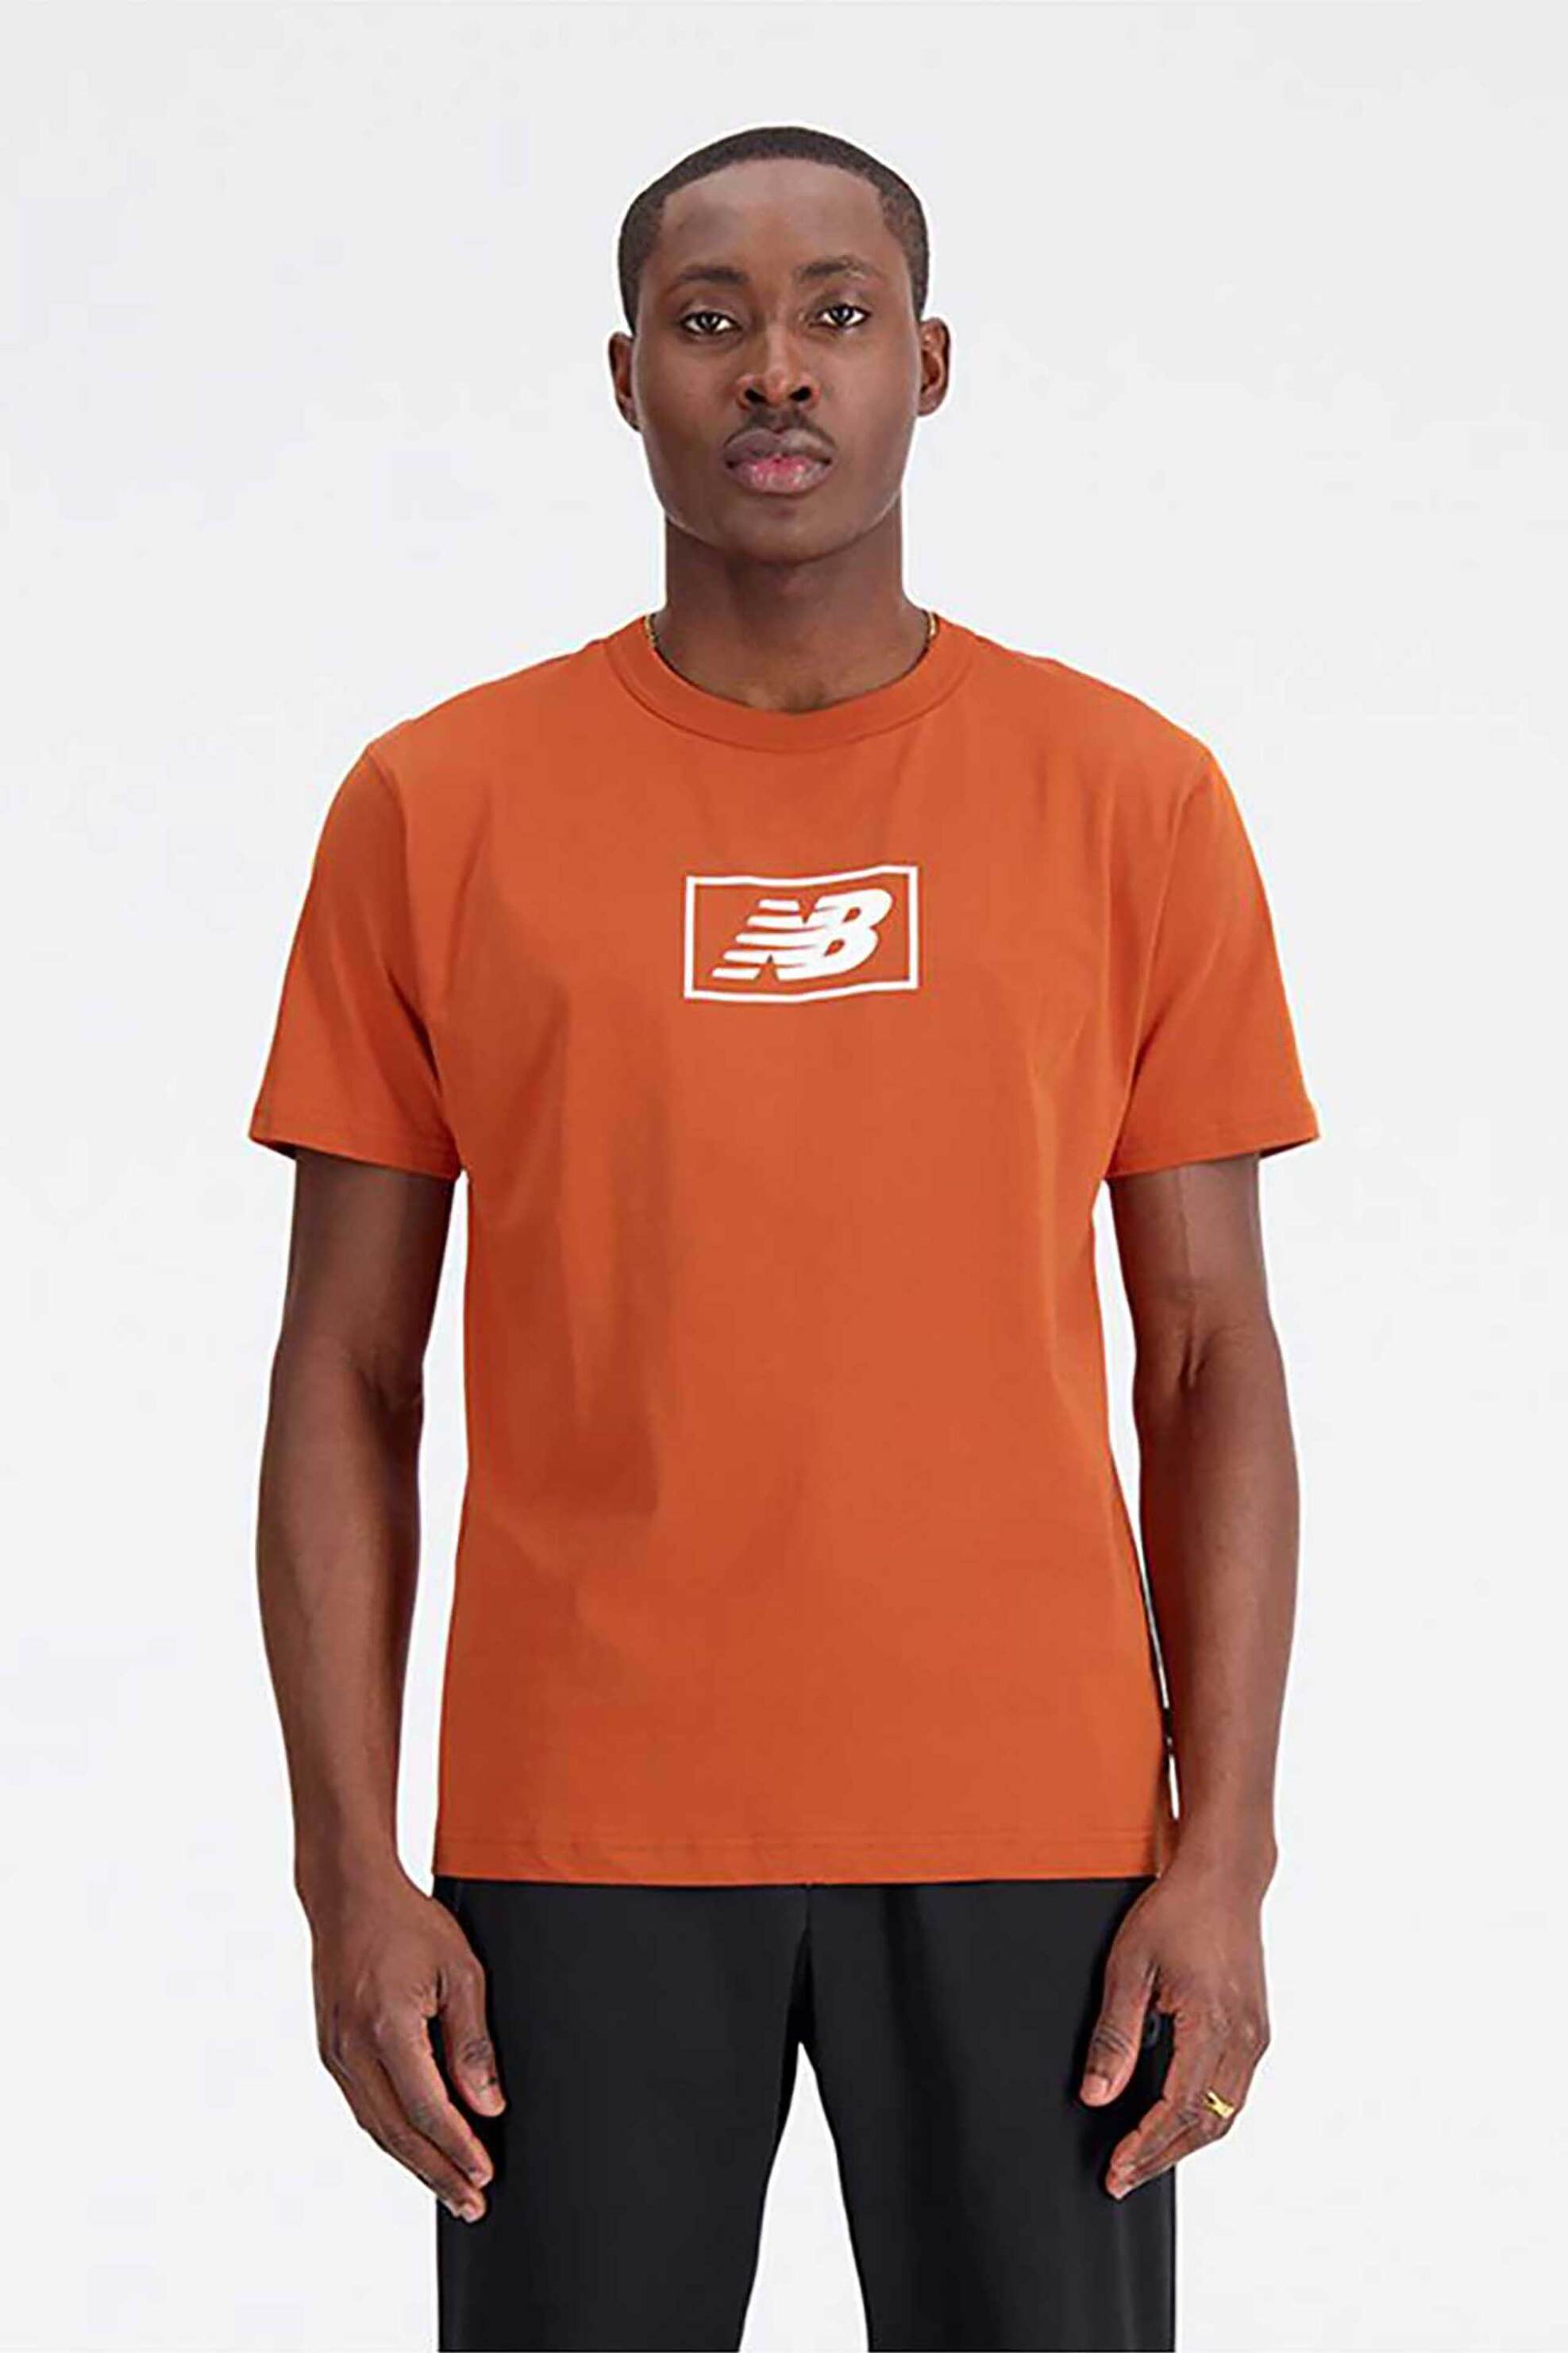 Άνδρας > ΑΘΛΗΤΙΚΑ > Αθλητικά Ρούχα > Αθλητικές Μπλούζες > Αθλητικά T-Shirts New Balance ανδρικό T-shirt μονόχρωμο με στρογγυλή λαιμόκοψη "Essentials Logo" - MT33512 Πορτοκαλί